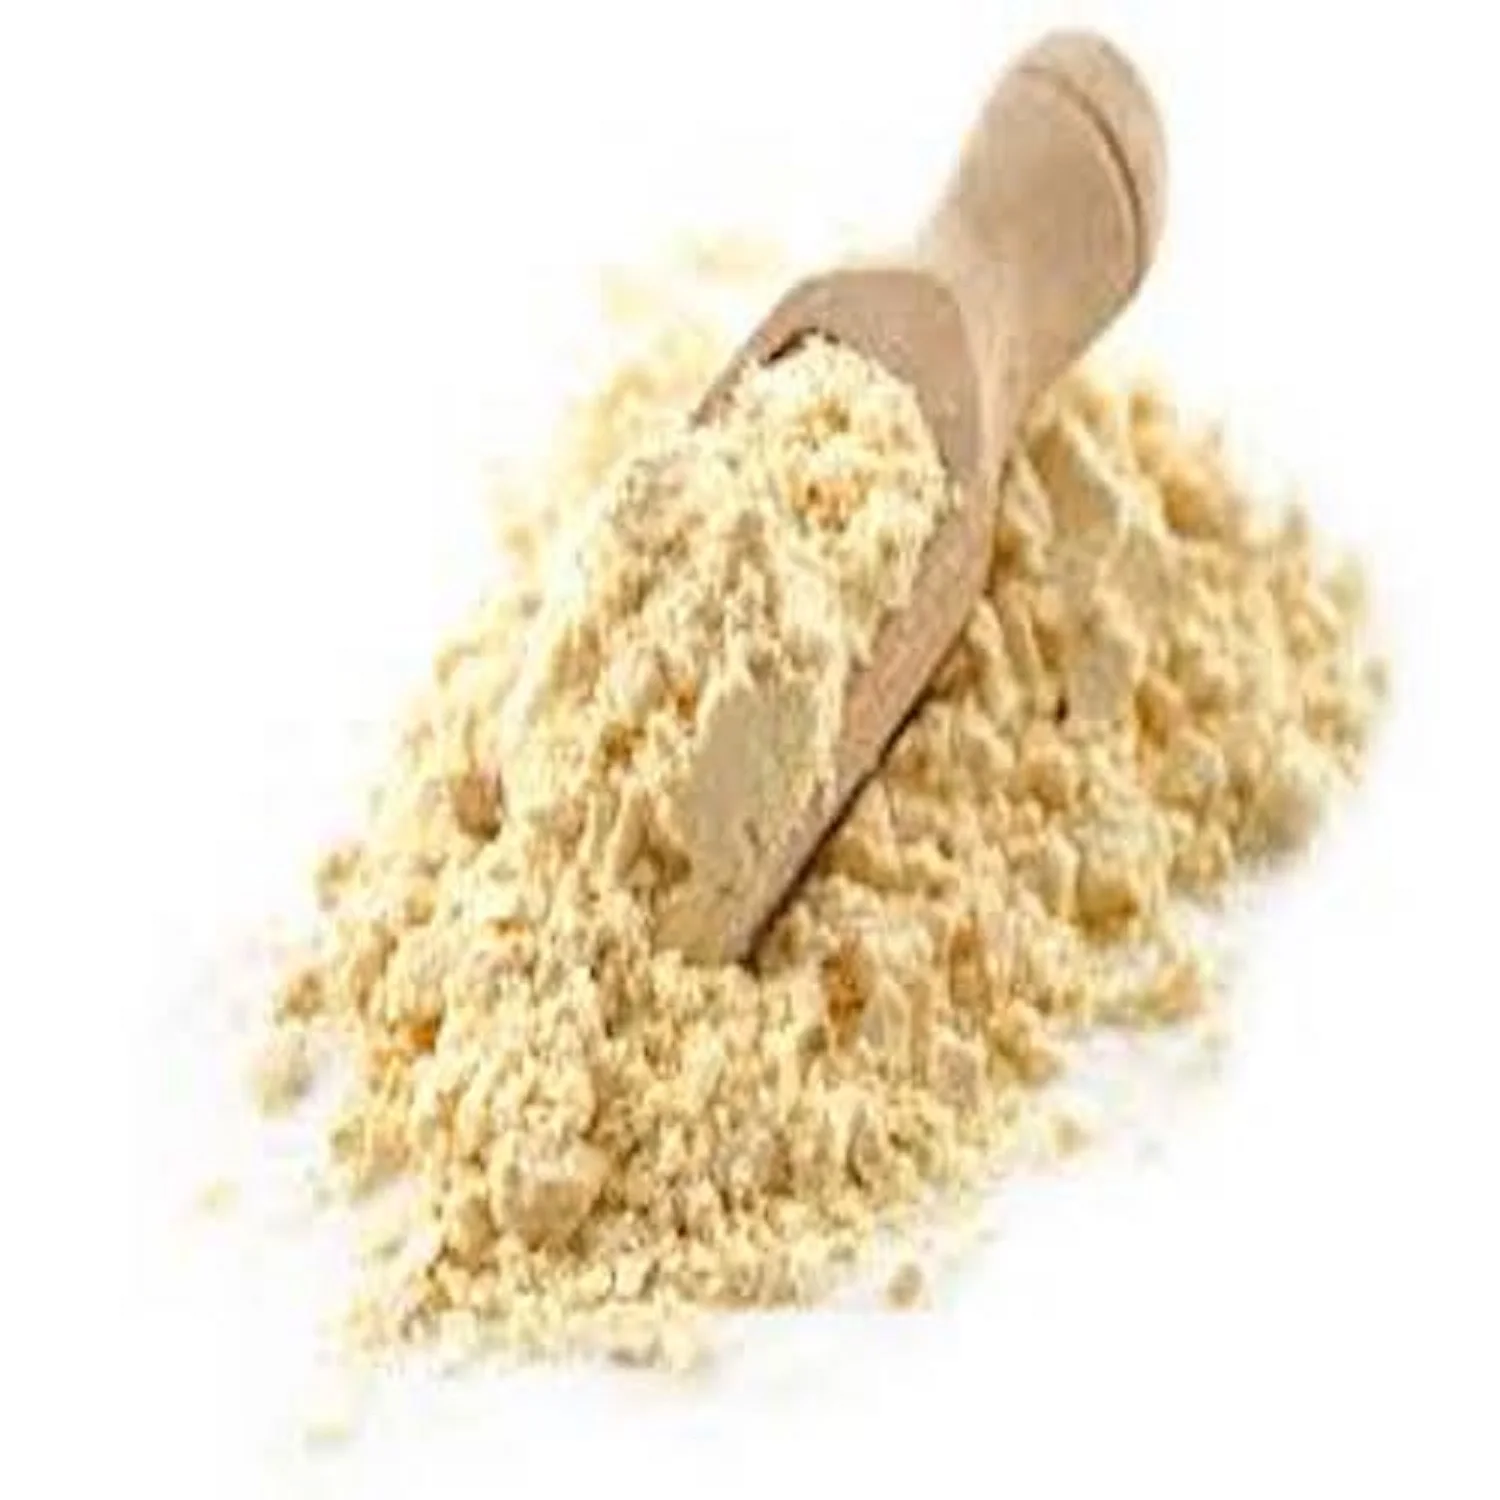 Соя жир. Соевая мука. Текстурированная мука. Мука Монголия. Protein in soy flour.